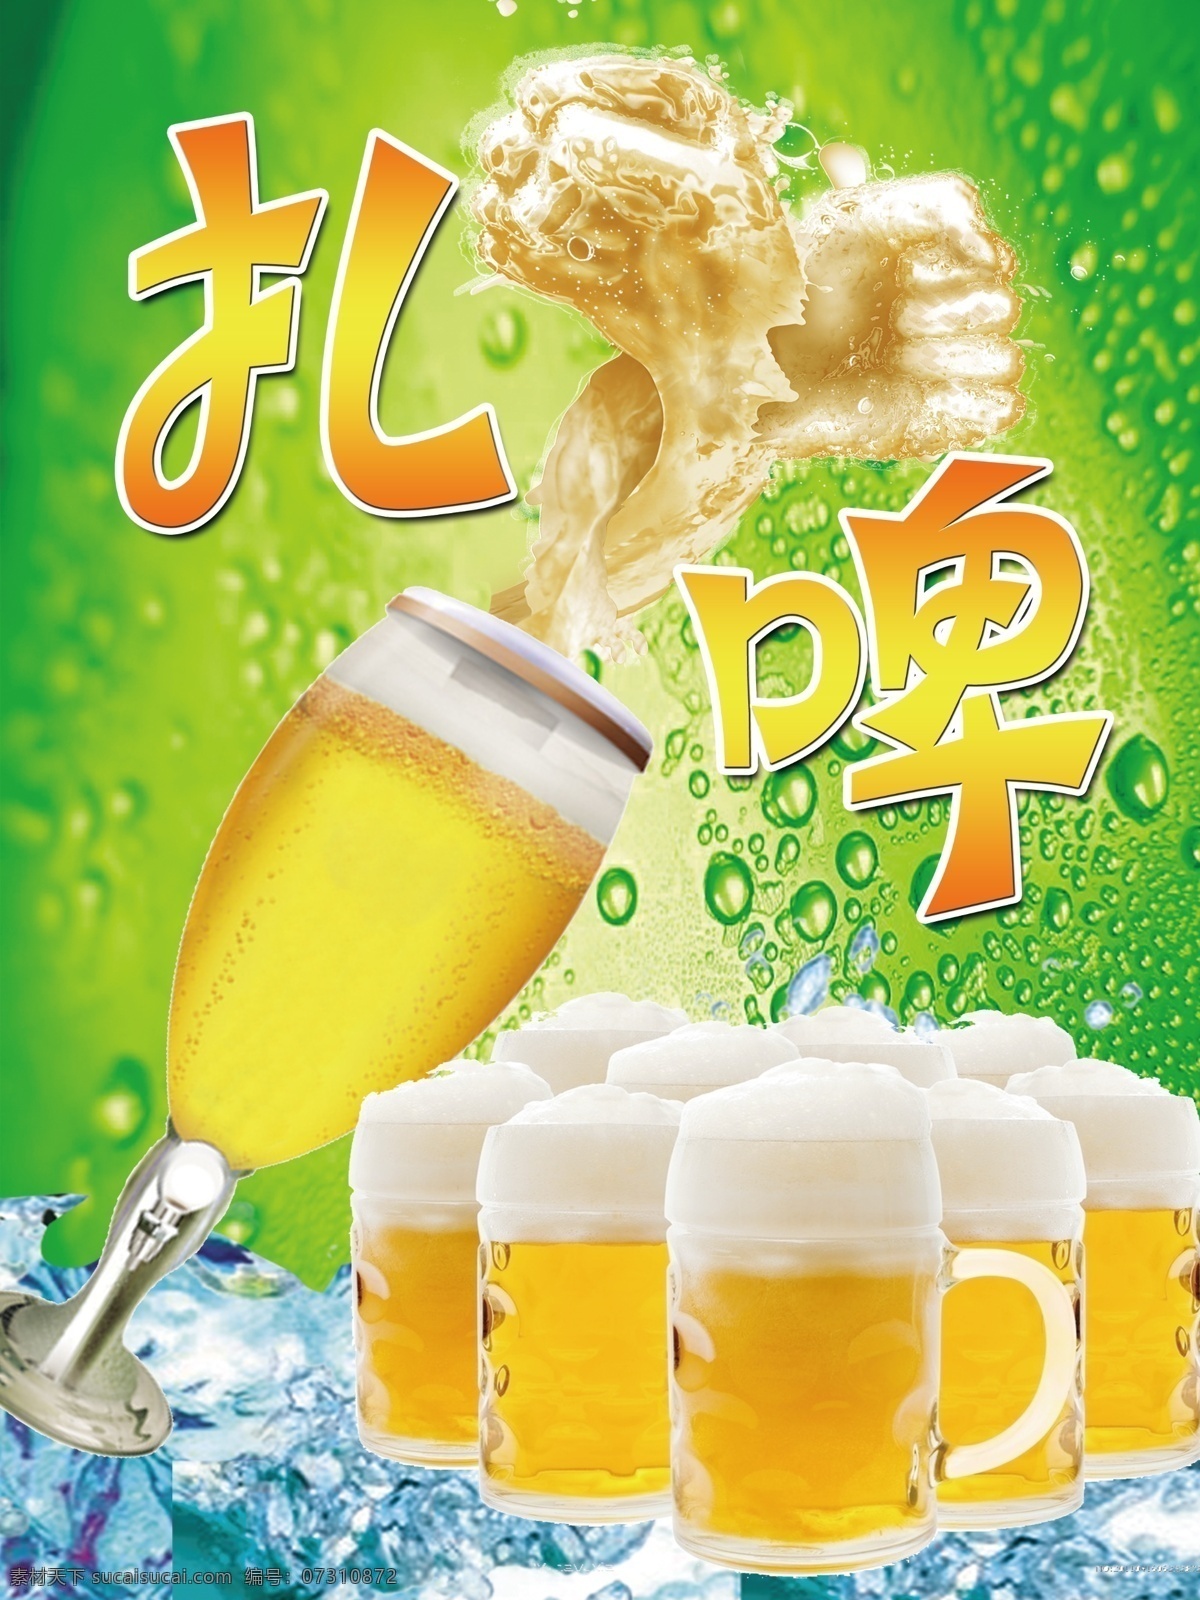 扎啤冰爽 清凉一夏 冰爽 冰块 扎啤 啤酒杯 酒杯 绿色 展板模板